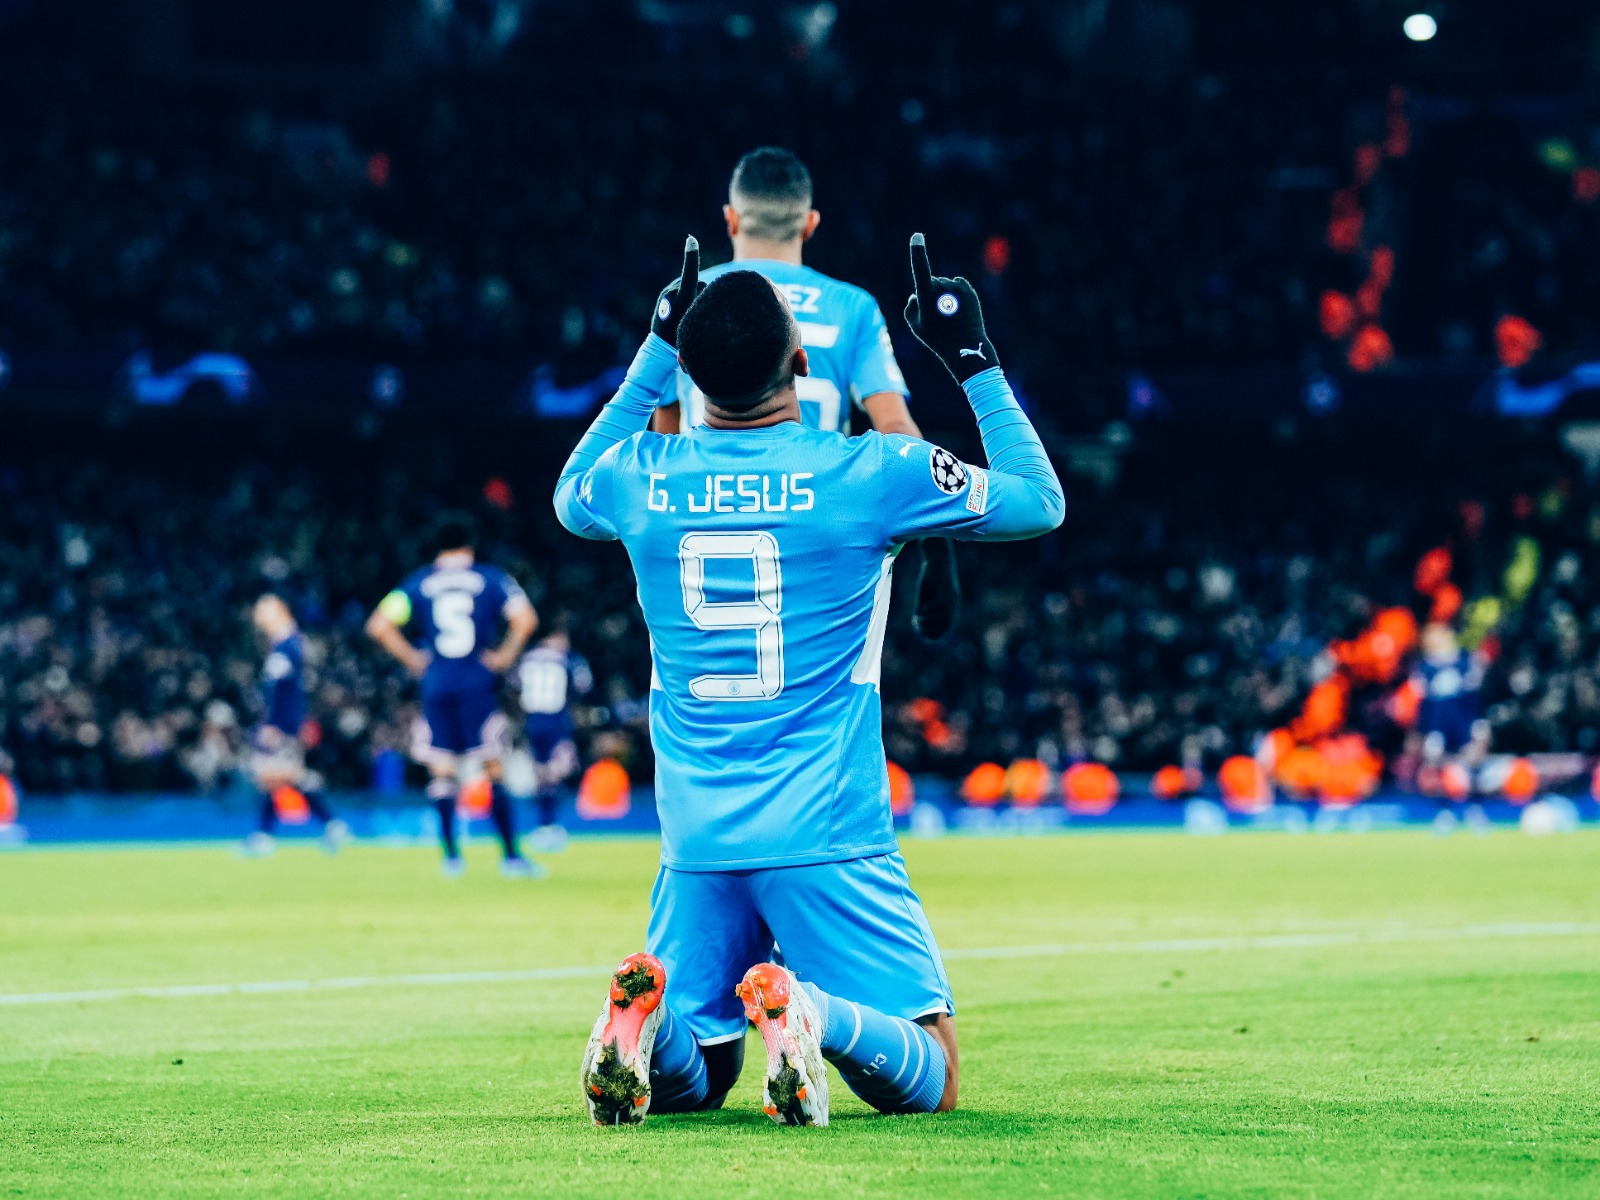  “Foi uma noite adorável”, disse Guardiola após classificação do City na Champions League